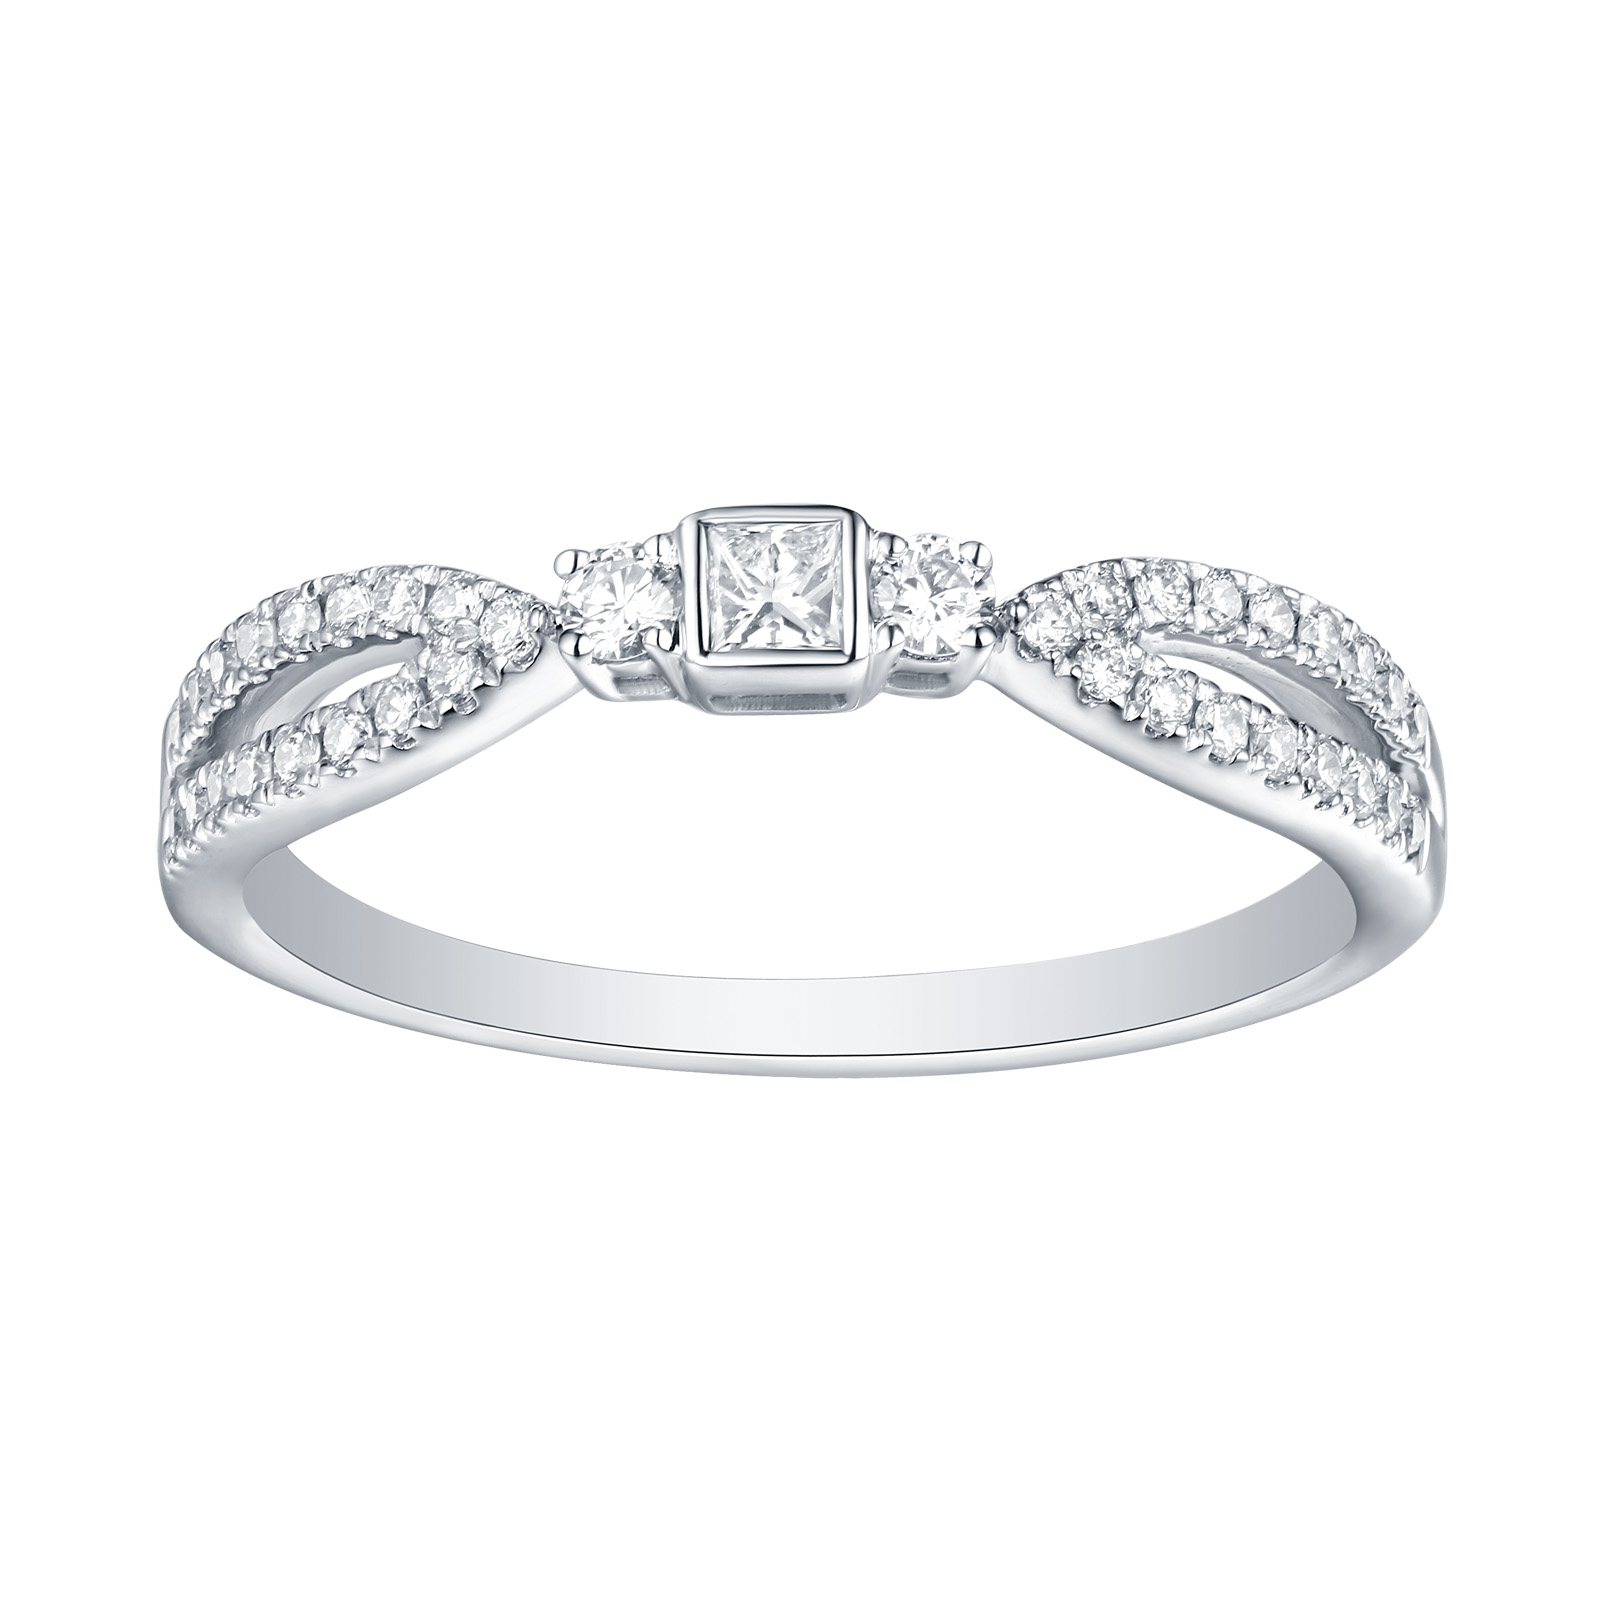 R25912WHT- 14K White Gold Diamond Ring, 0.27 TCW